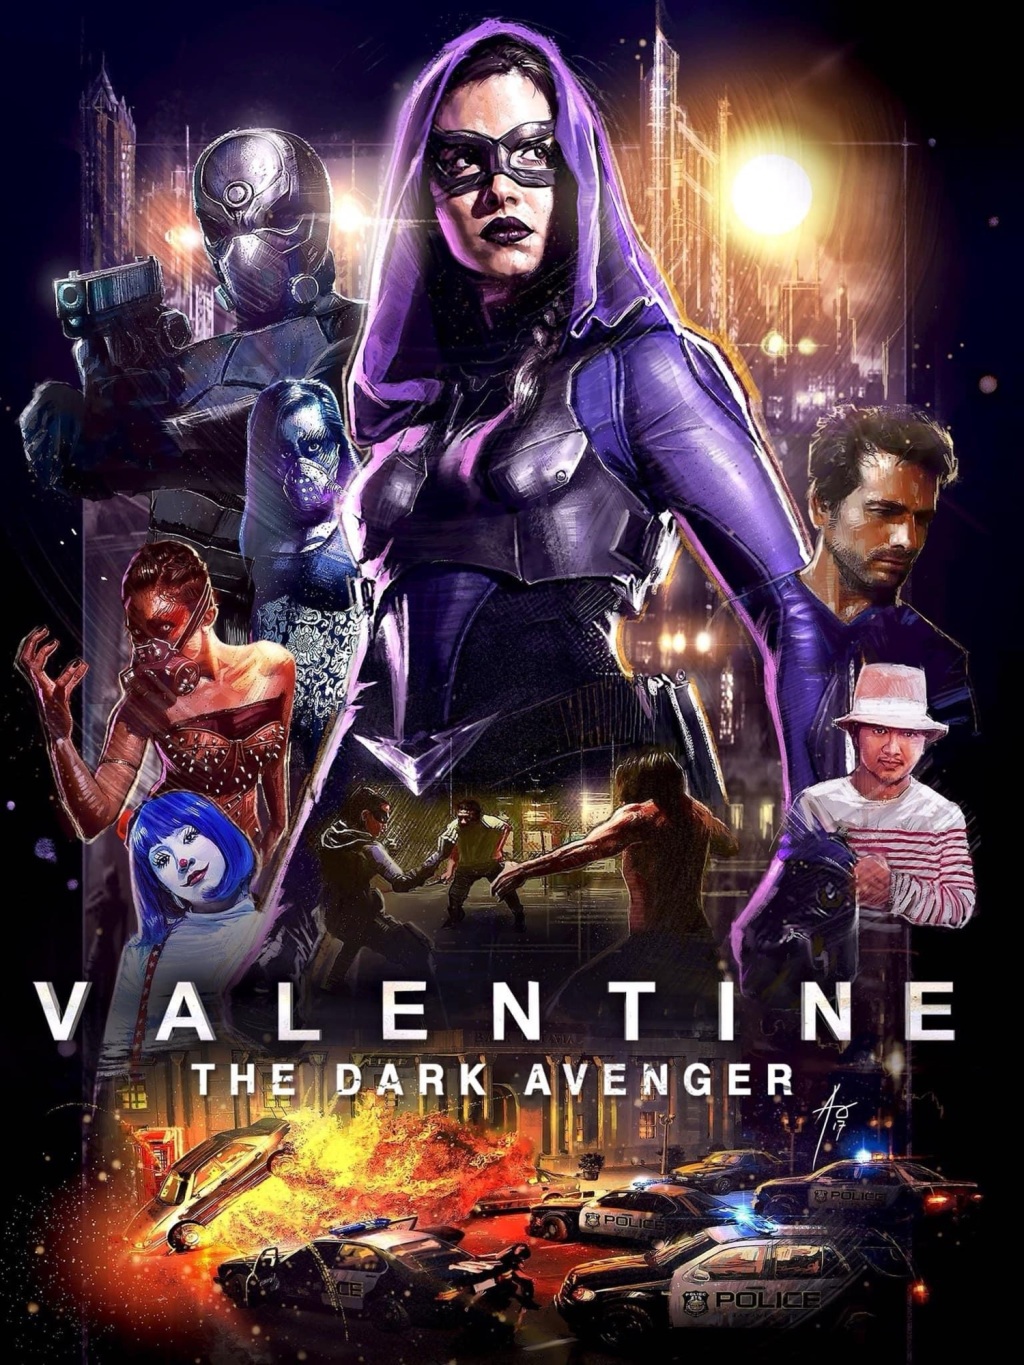 Valentine: The Dark Avenger